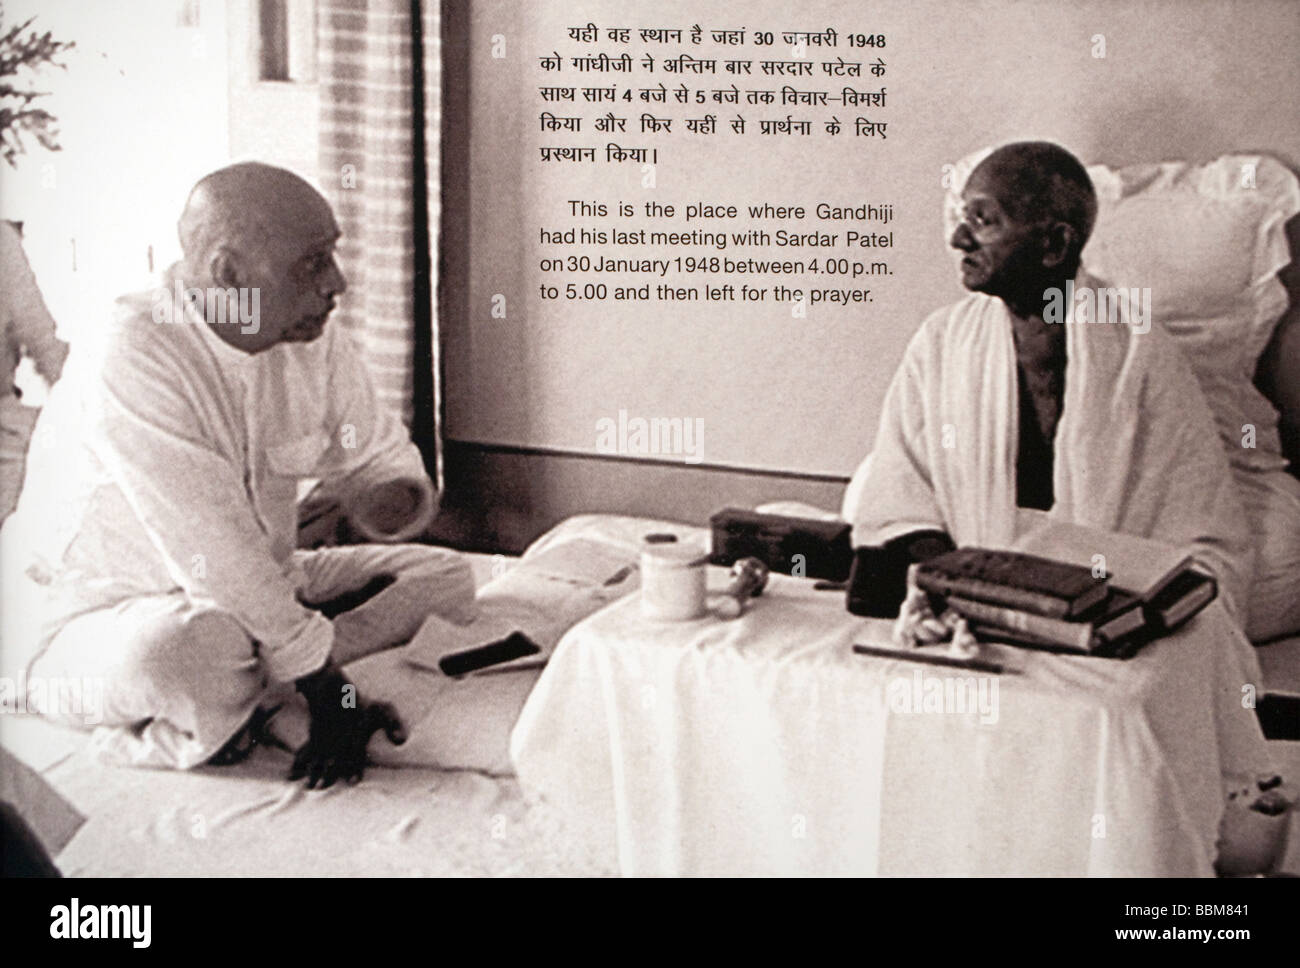 Mahatma Gandhi With Nehru Memorial Museum New Delhi India Asia Stock Photo